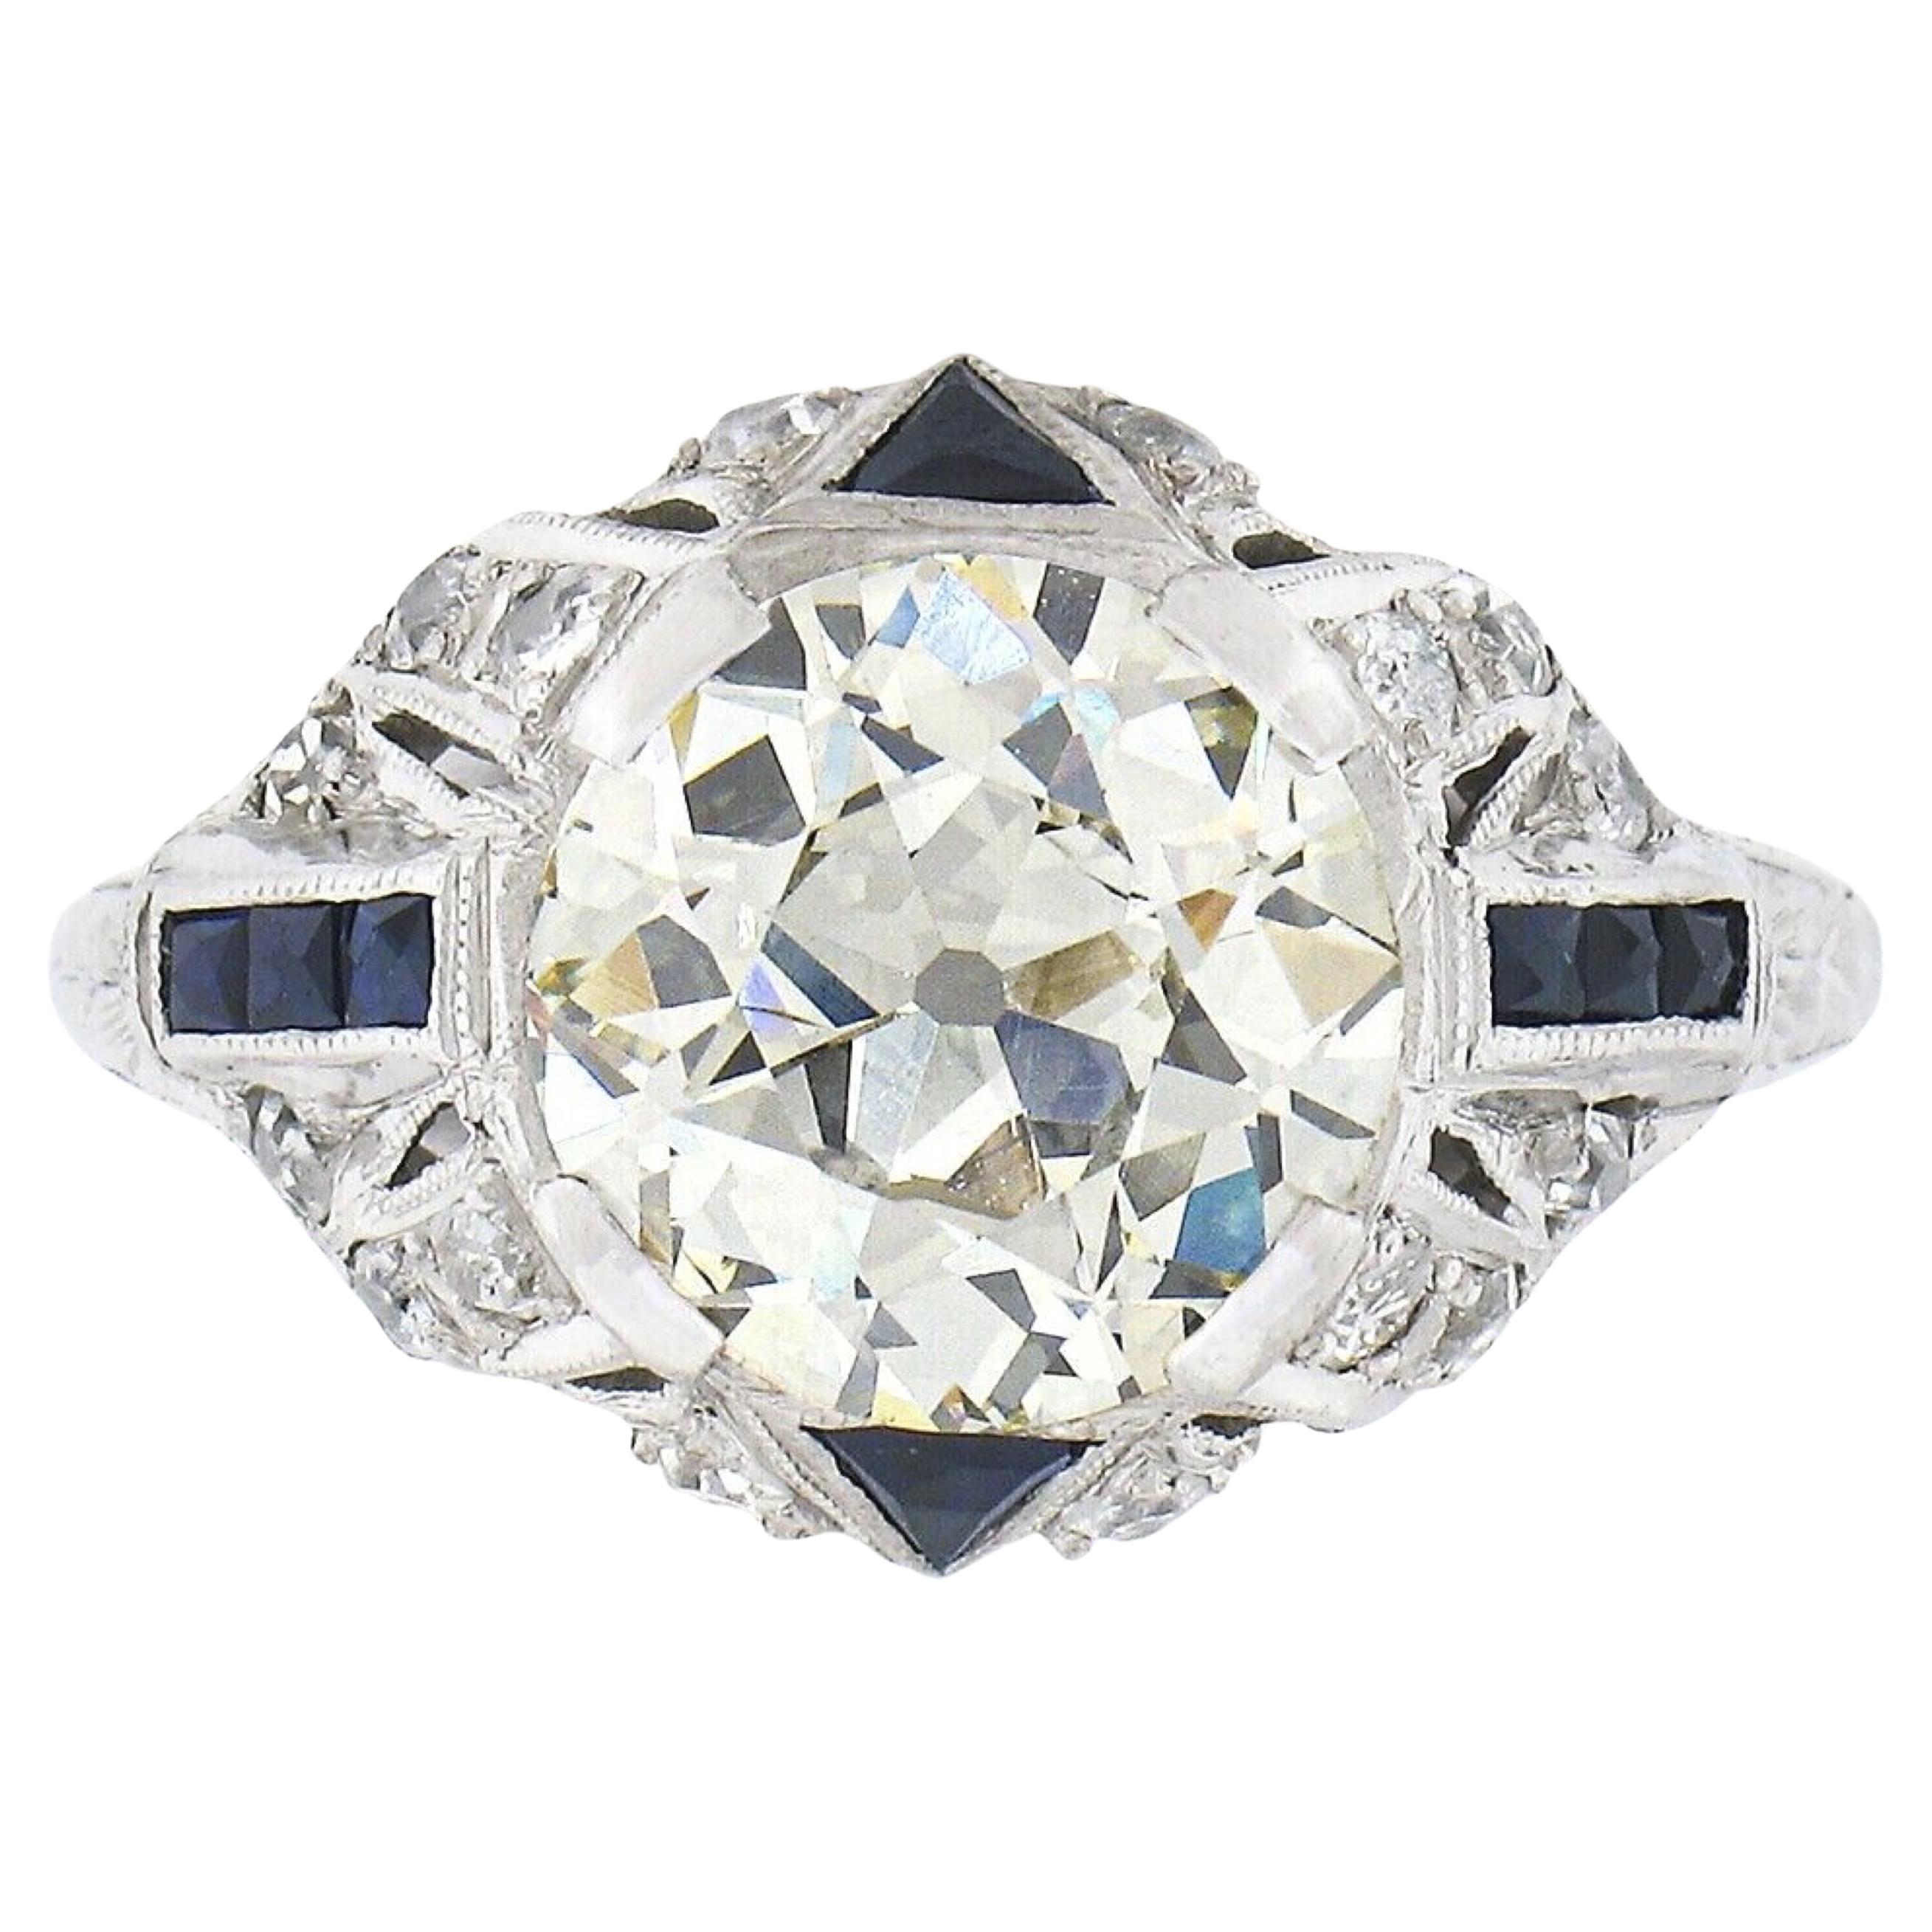 Antique Art Deco Platinum 3.29ct GIA European Diamond & Sapphire Engagement Ring